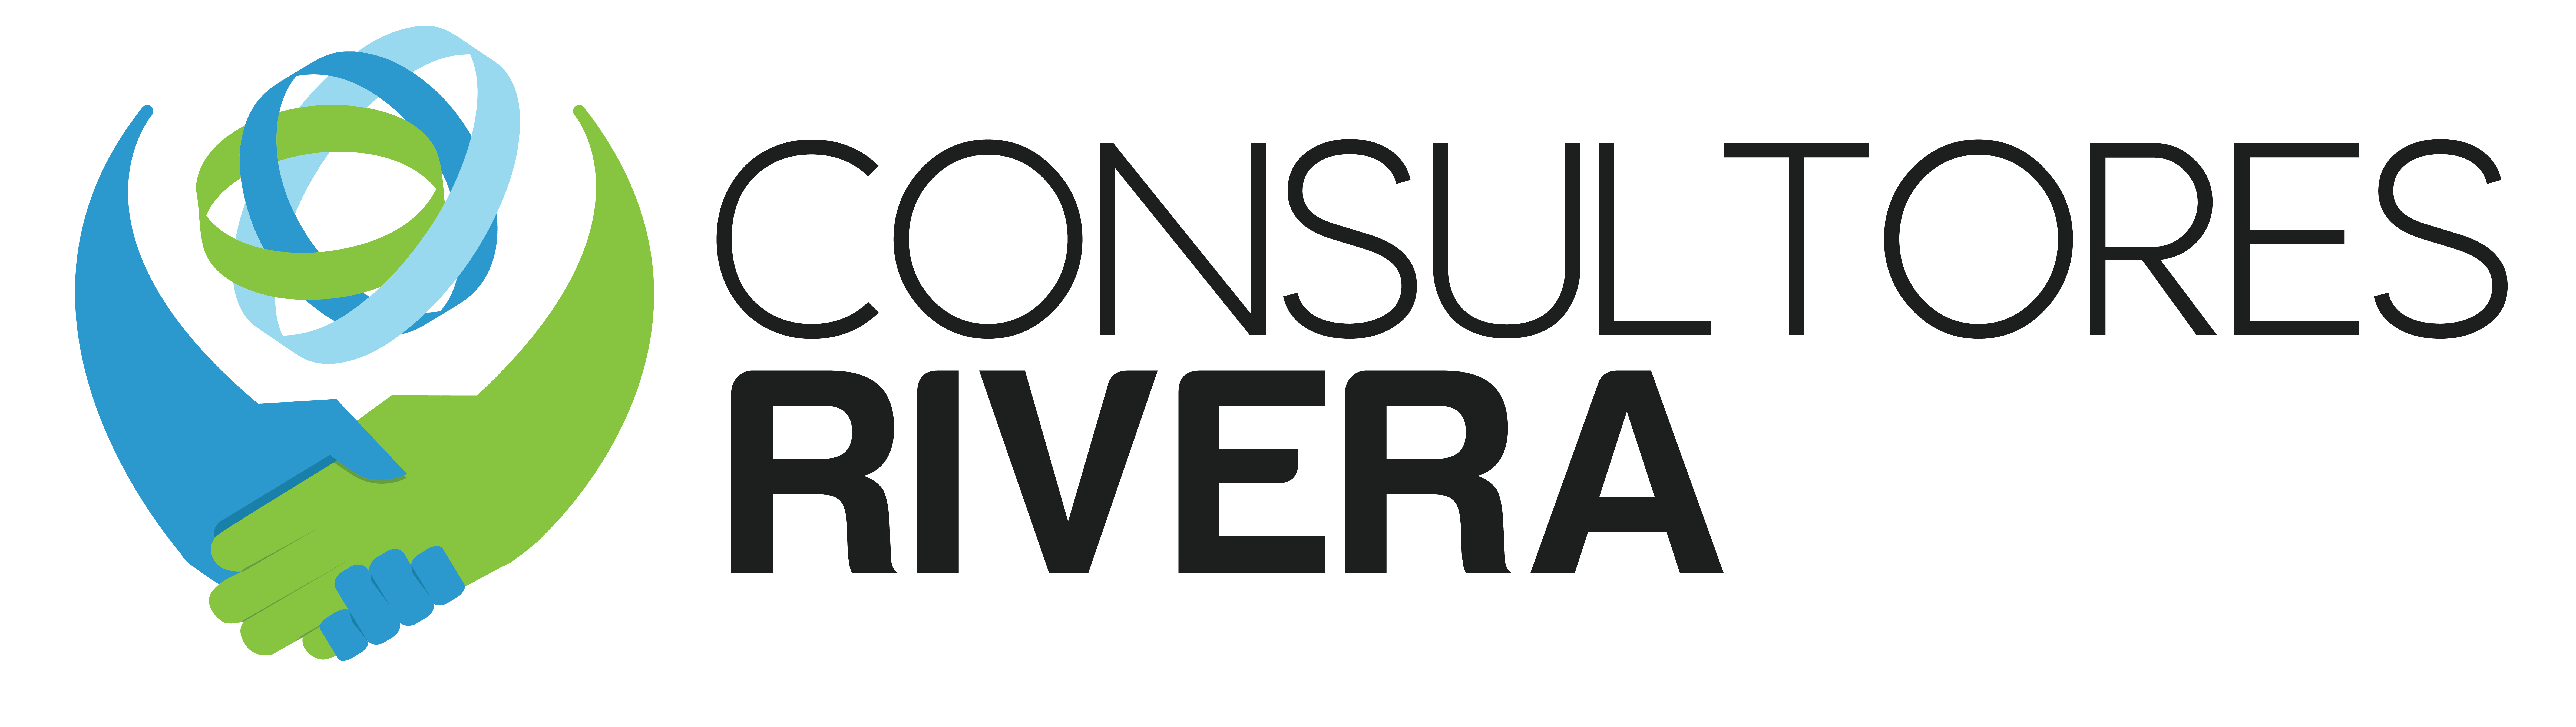 Logo-Consultores-Rivera-Guatemala